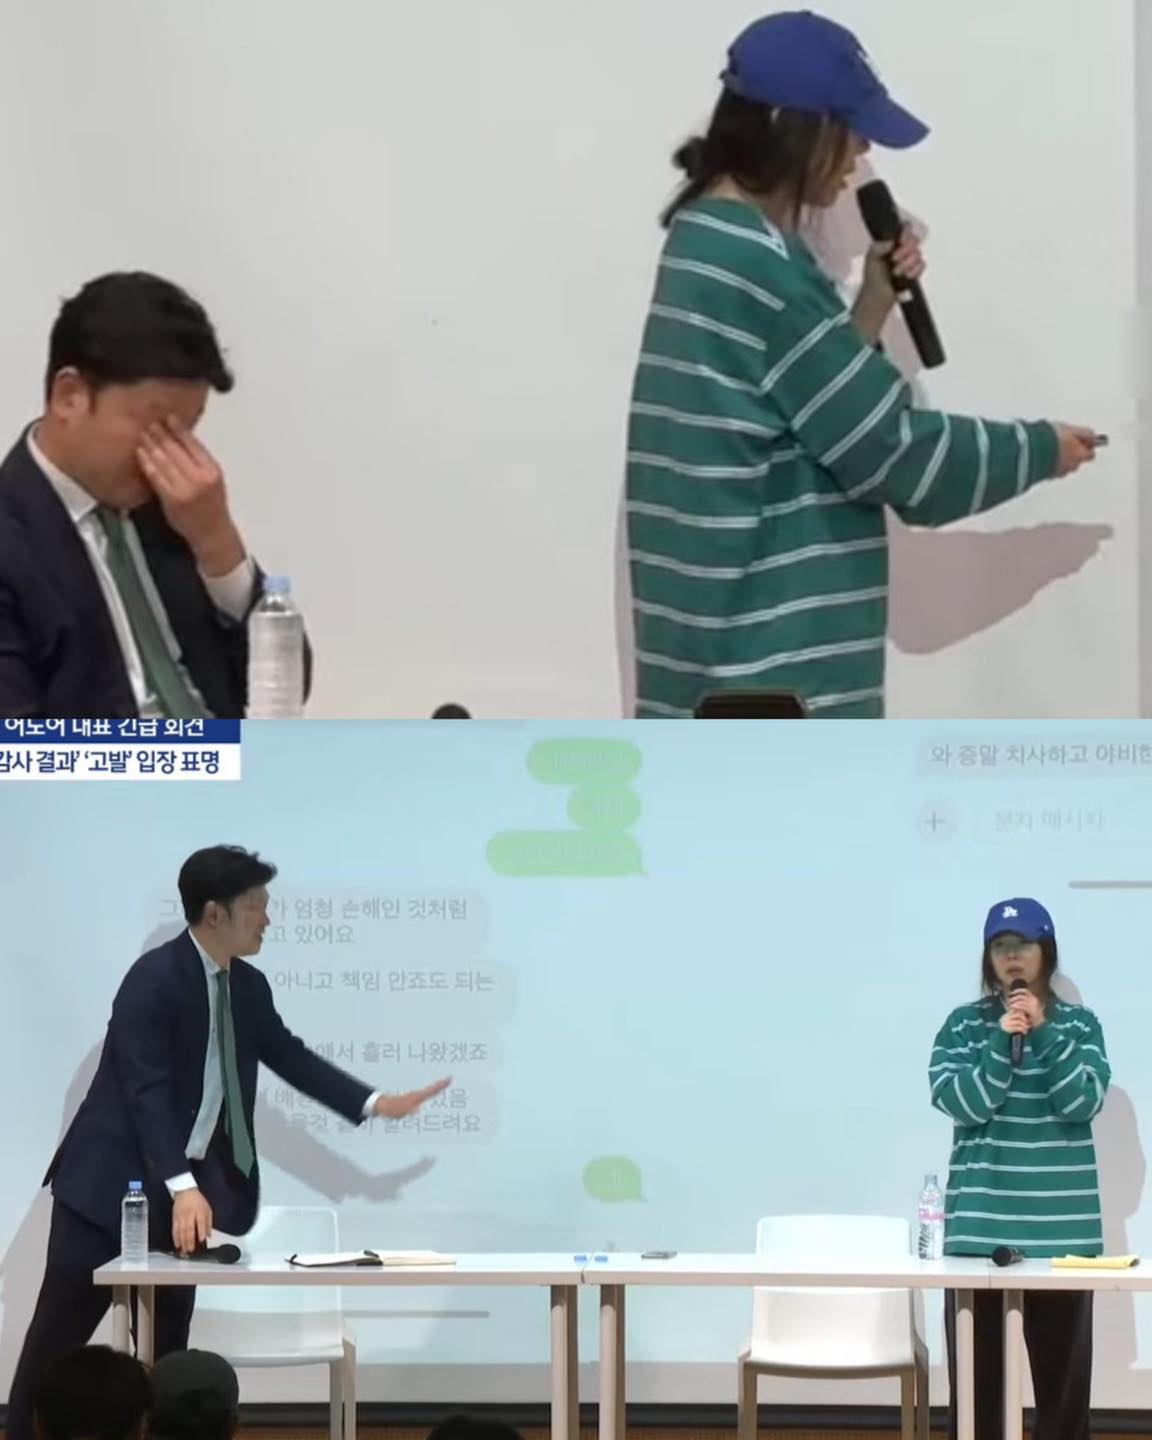 Min Hee Jin xuống nước muốn giải quyết nội bộ với HYBE, tiết lộ sốc: Cuộc gọi của NewJeans đã cứu mạng tôi - Ảnh 3.